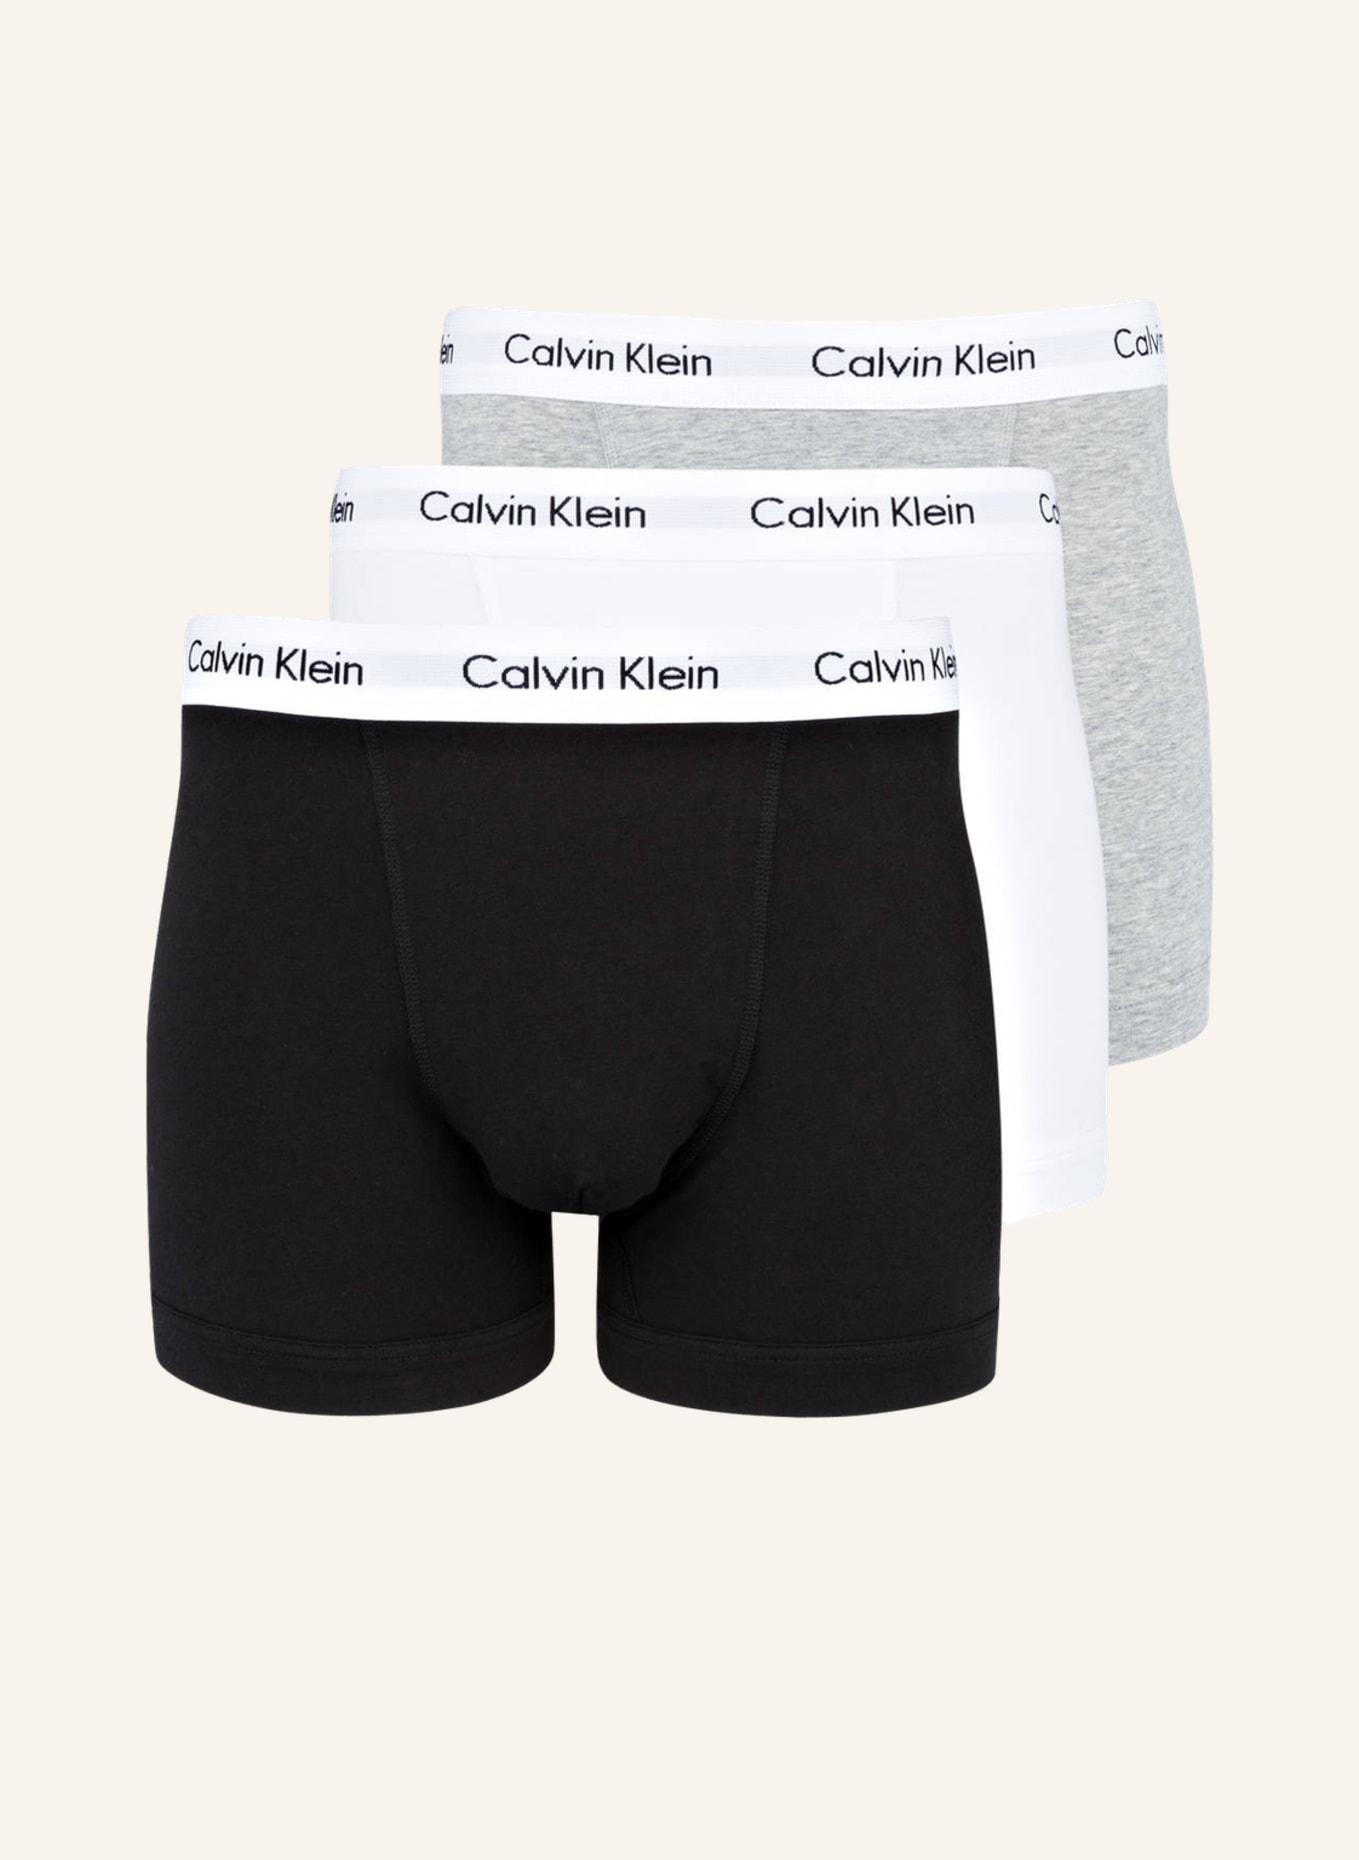 Calvin Klein 3er-Pack Boxershorts COTTON STRETCH, Farbe: GRAU/ SCHWARZ/ WEISS (Bild 1)